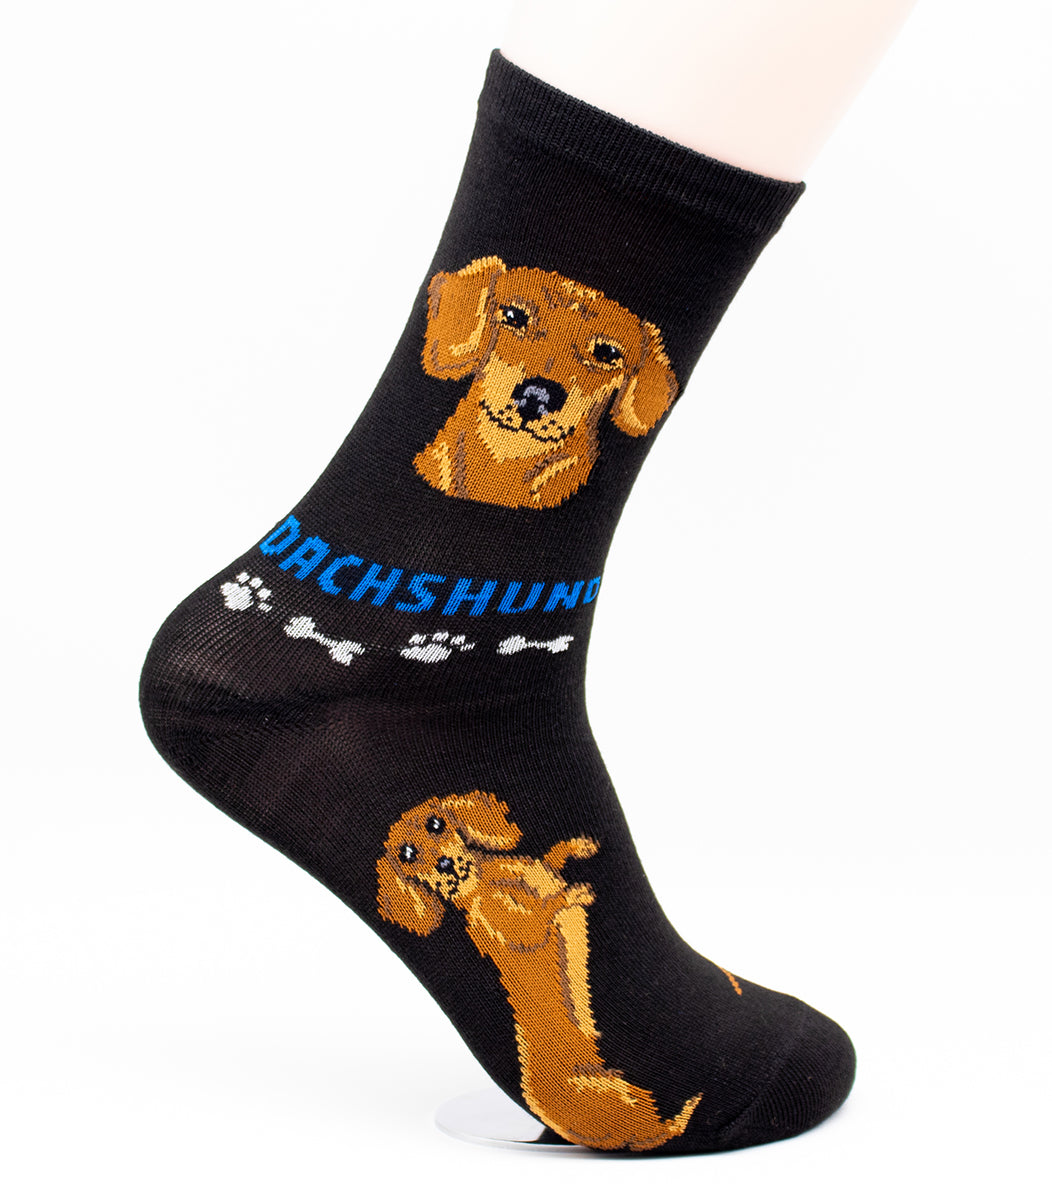 Dachshund Dog Breed Foozy Novelty Socks